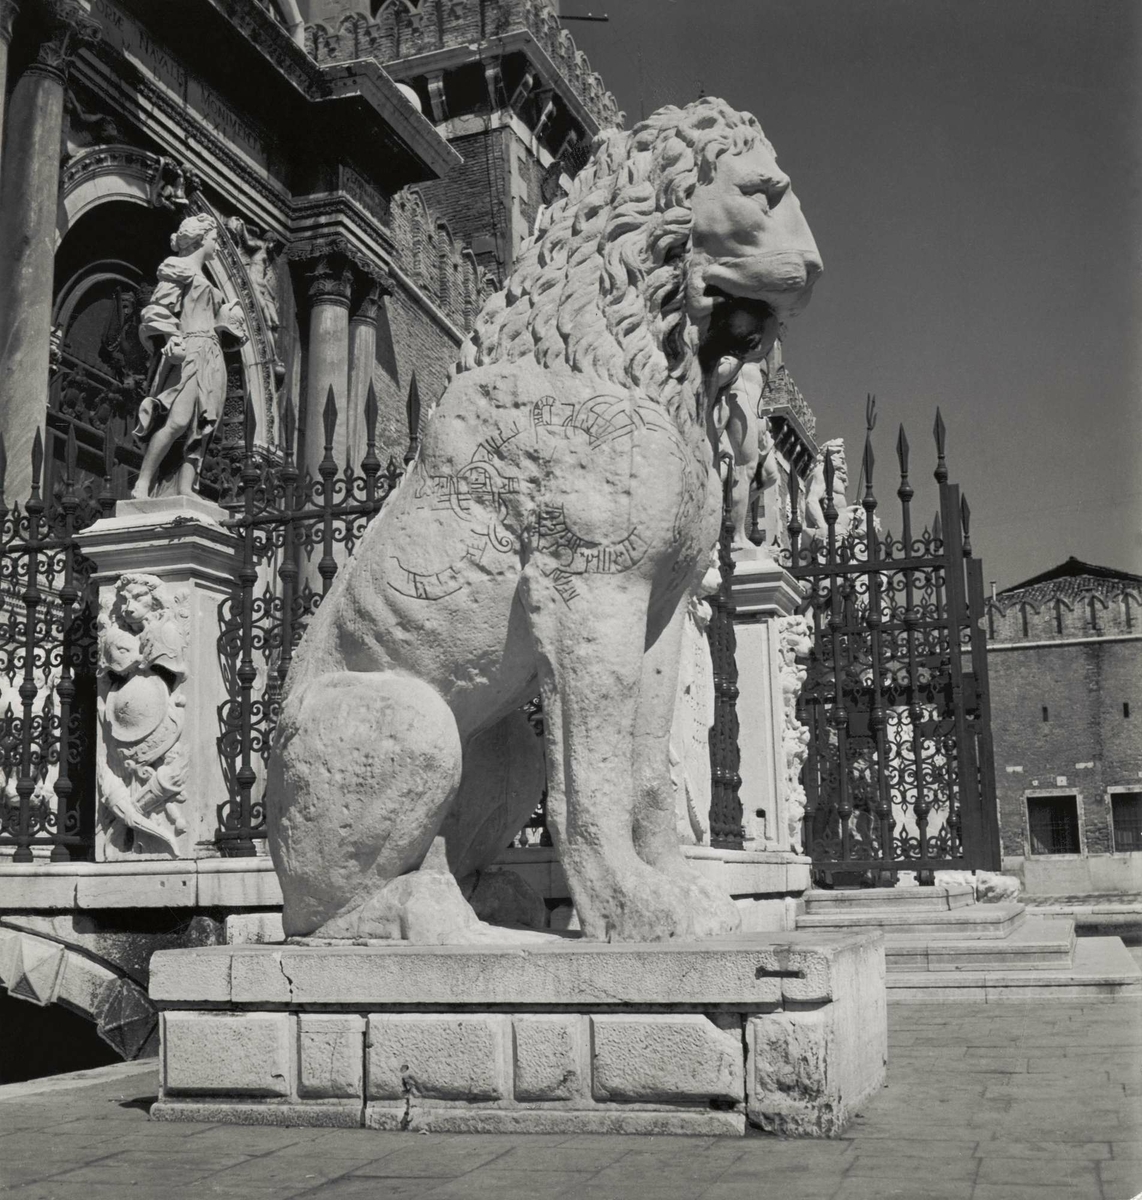 "Runlejonet i Venedig". Staty av lejon med runor inristade. Lejonet i profil.